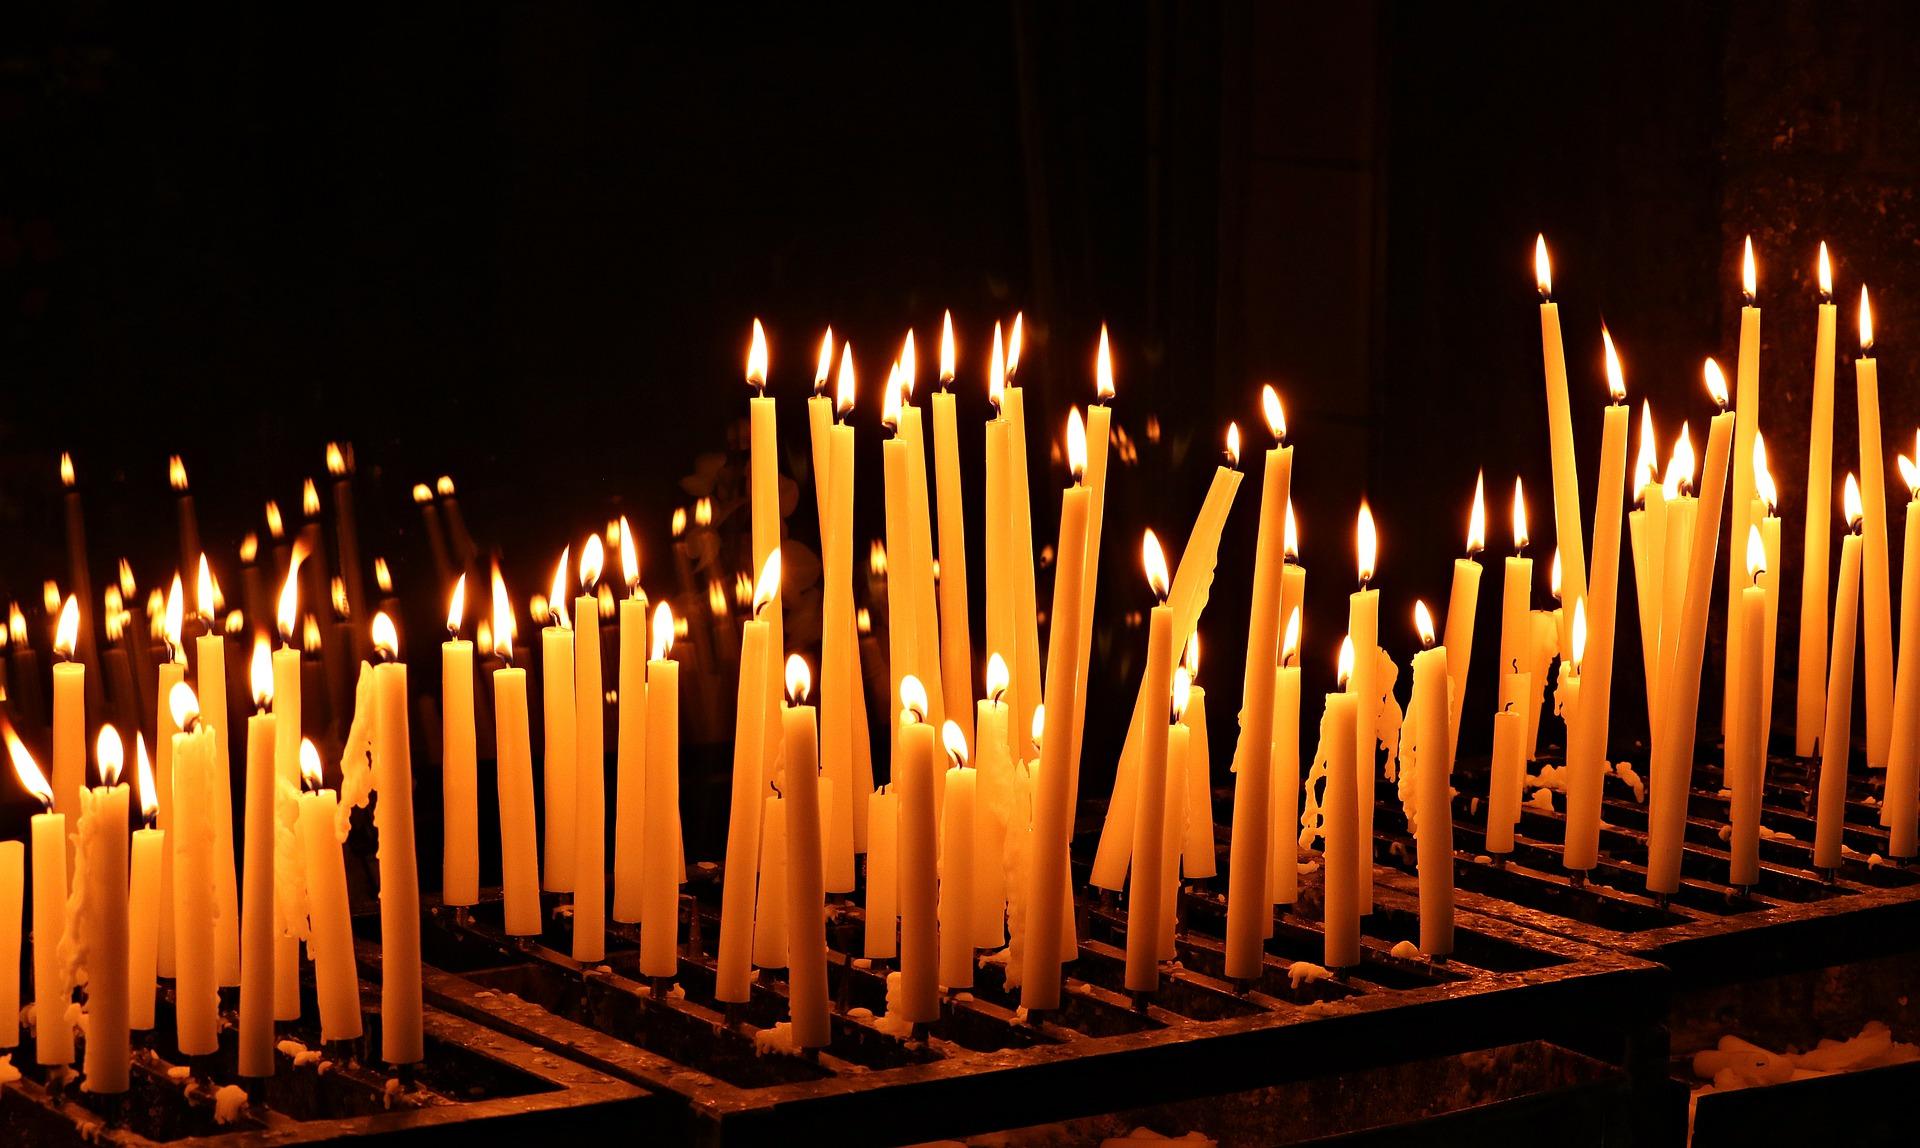 Palavia kynttilöitä pimeässä.